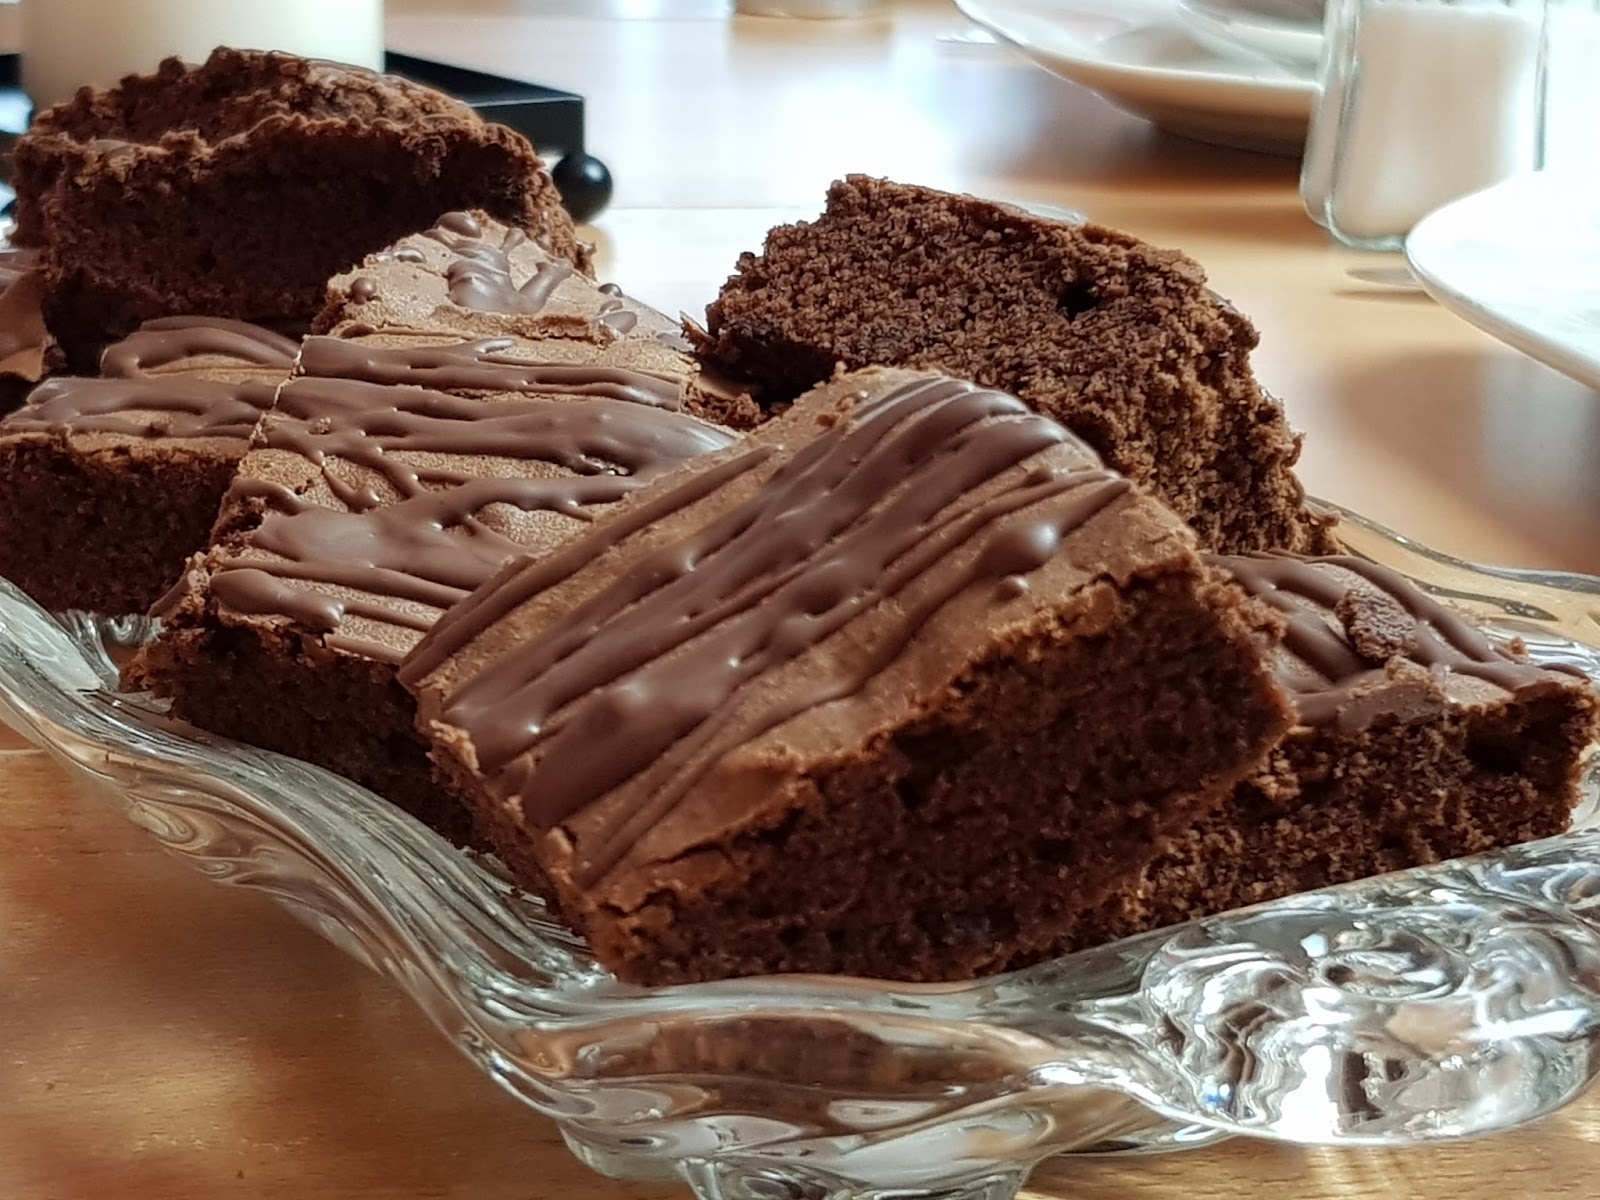 Schokoladenwürfel — Rezepte Suchen